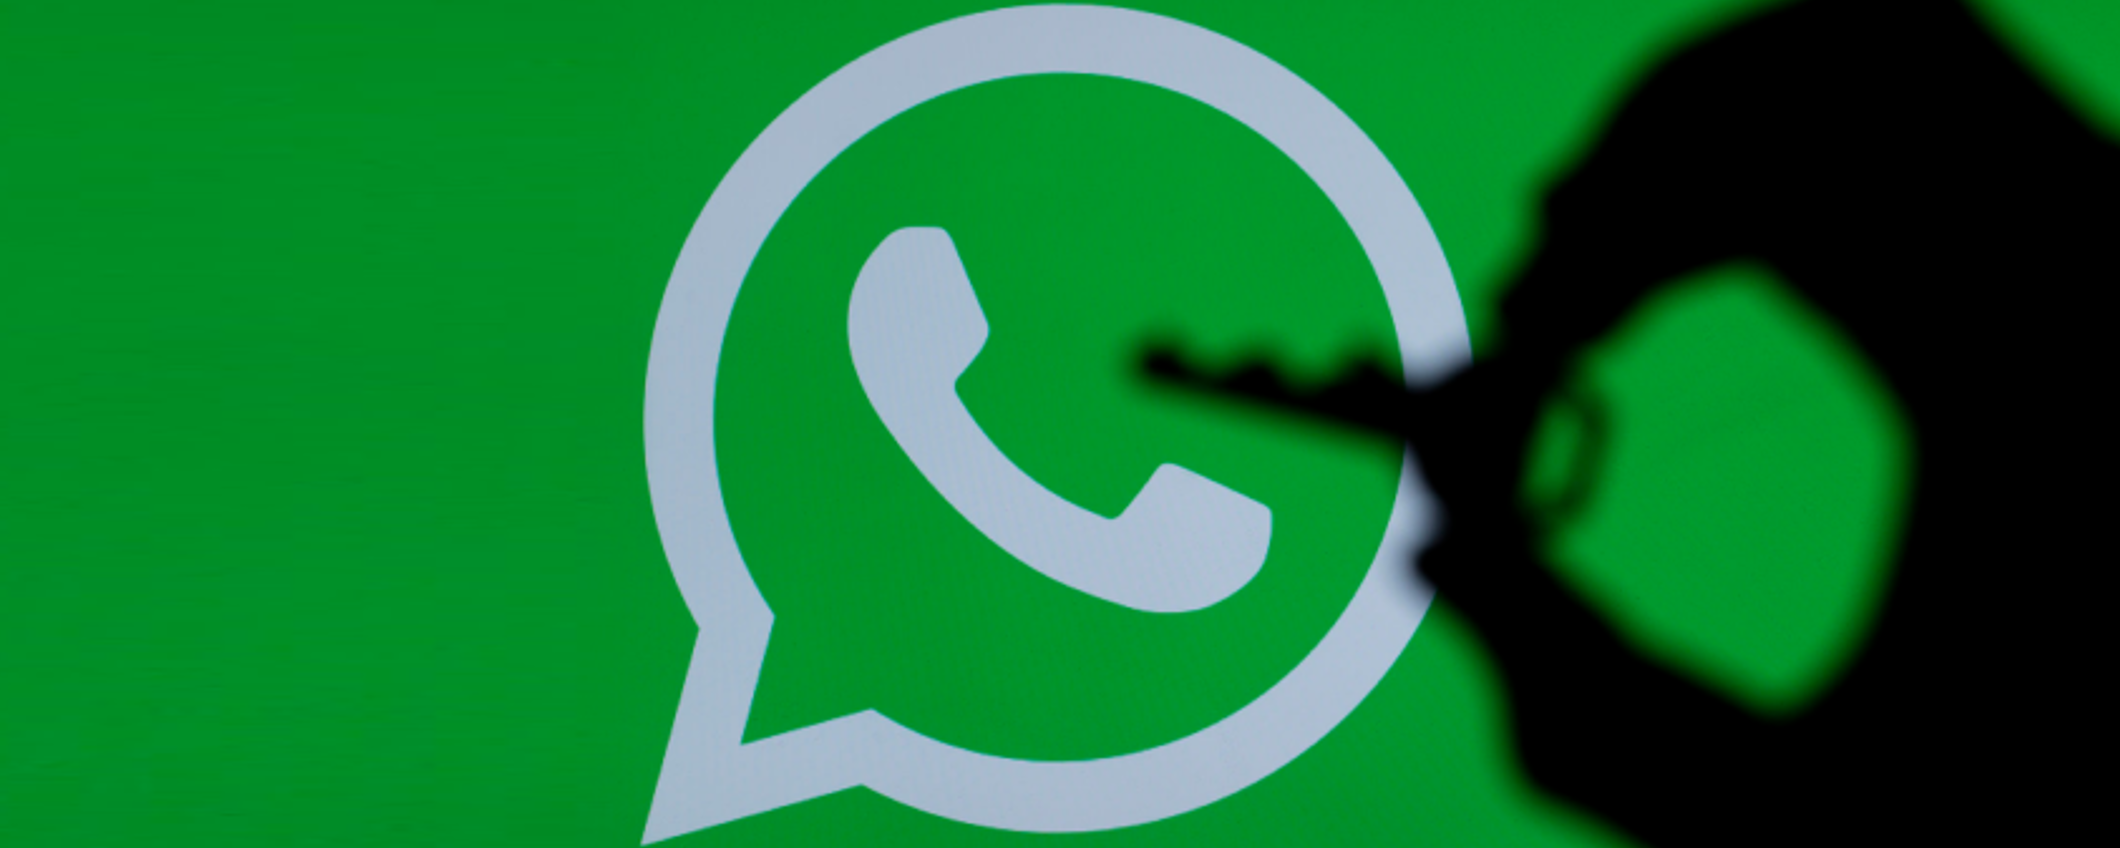 WhatsApp: autenticazione più sicura tramite passkey